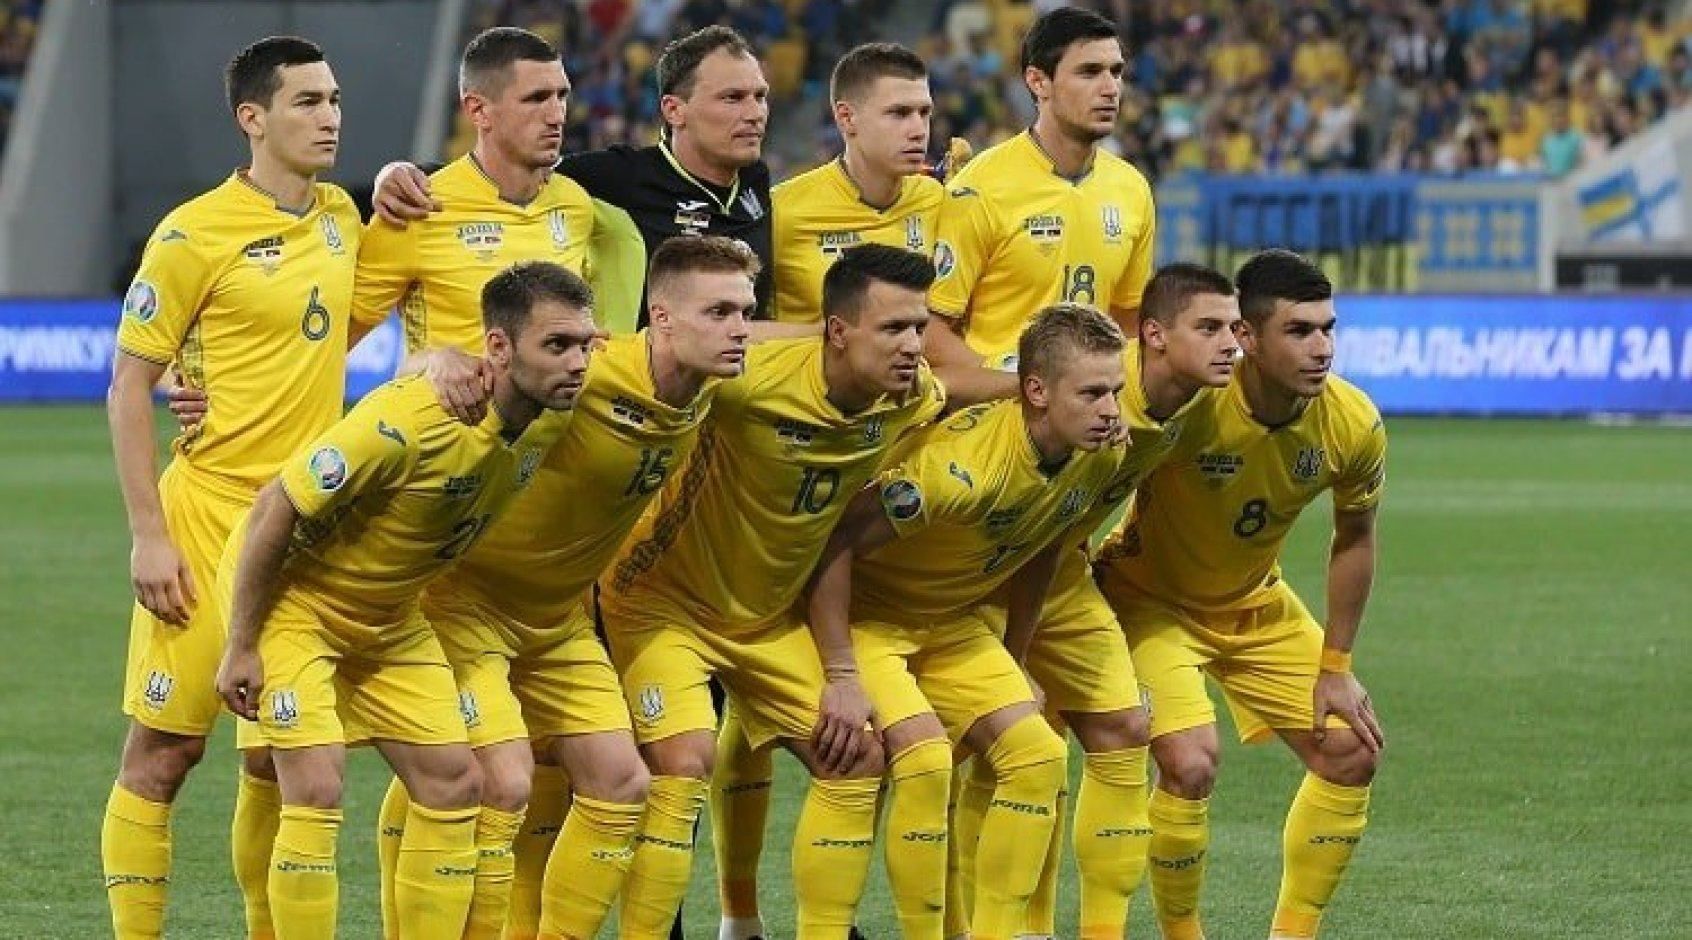 Оголошено про відбір до збірної України з кіберфутболу: як потрапити